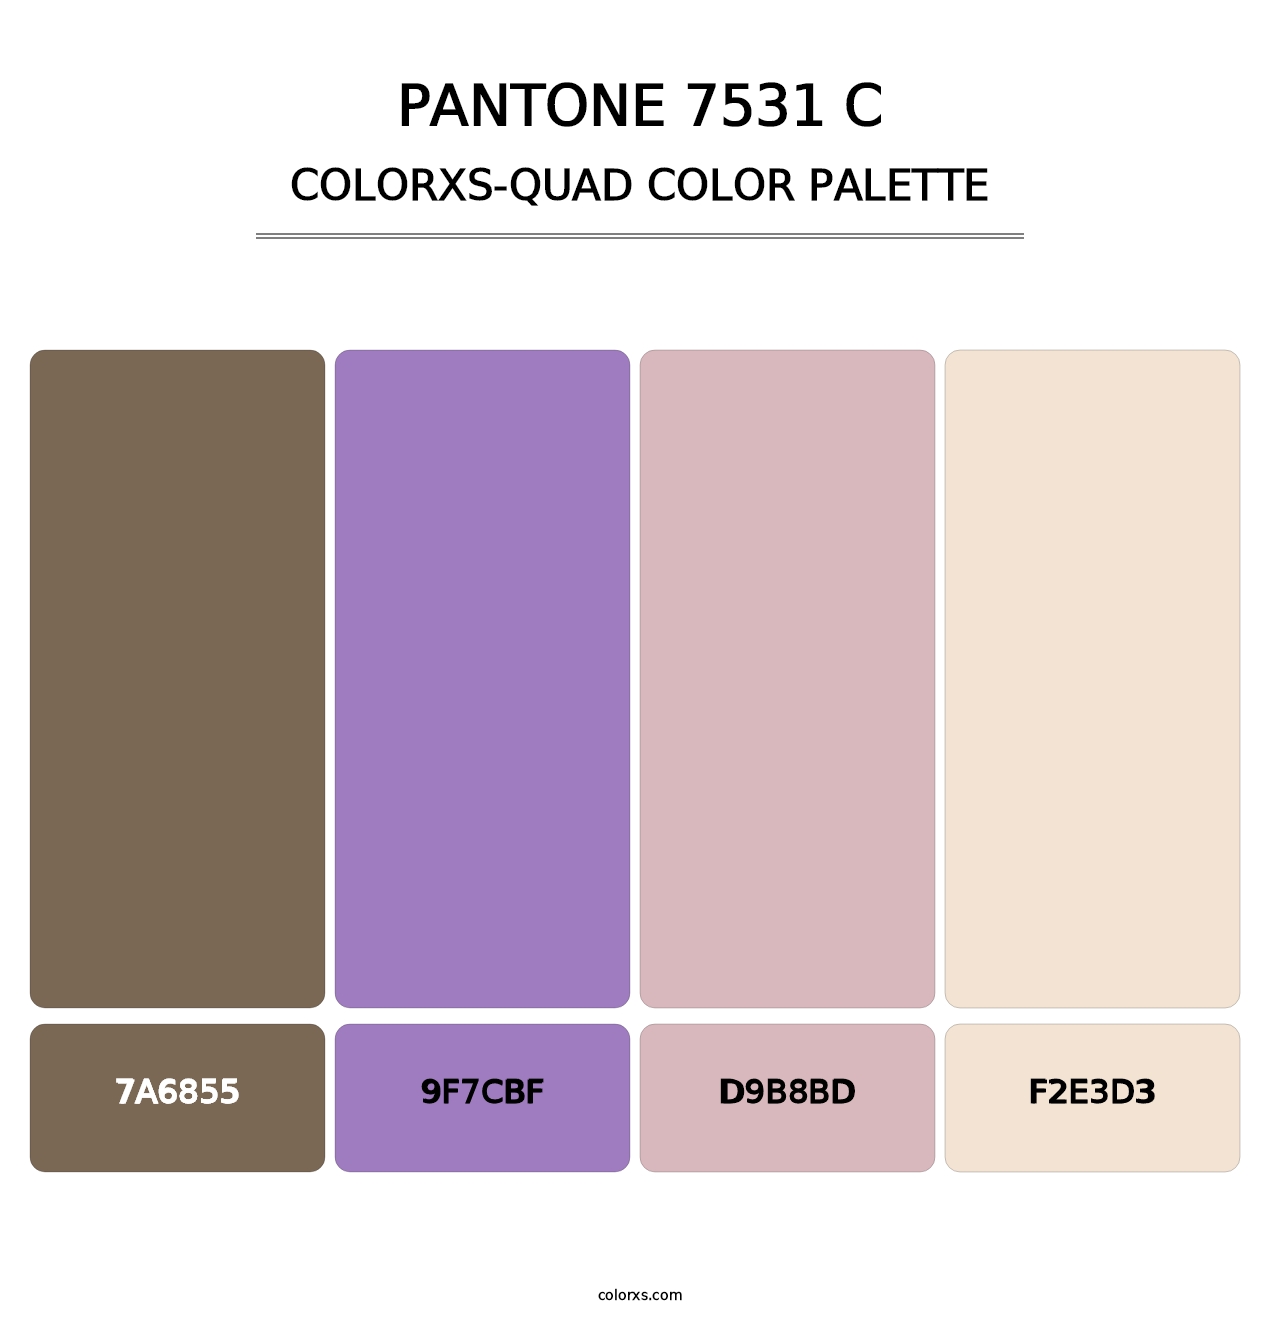 PANTONE 7531 C - Colorxs Quad Palette